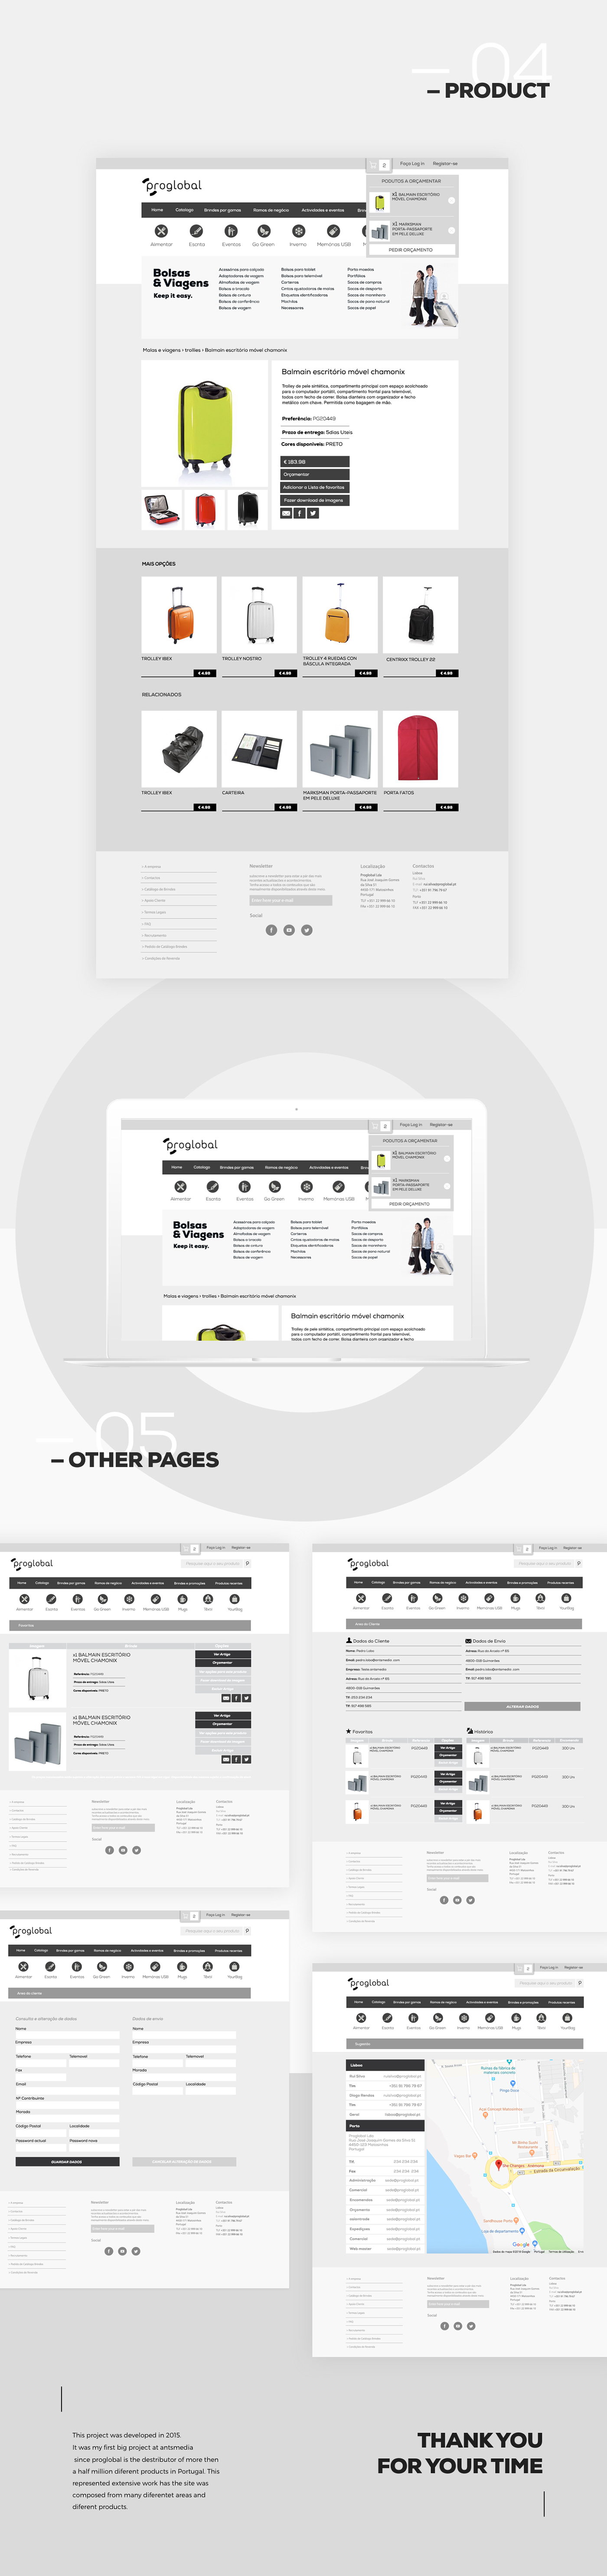 design Web site ux/ui